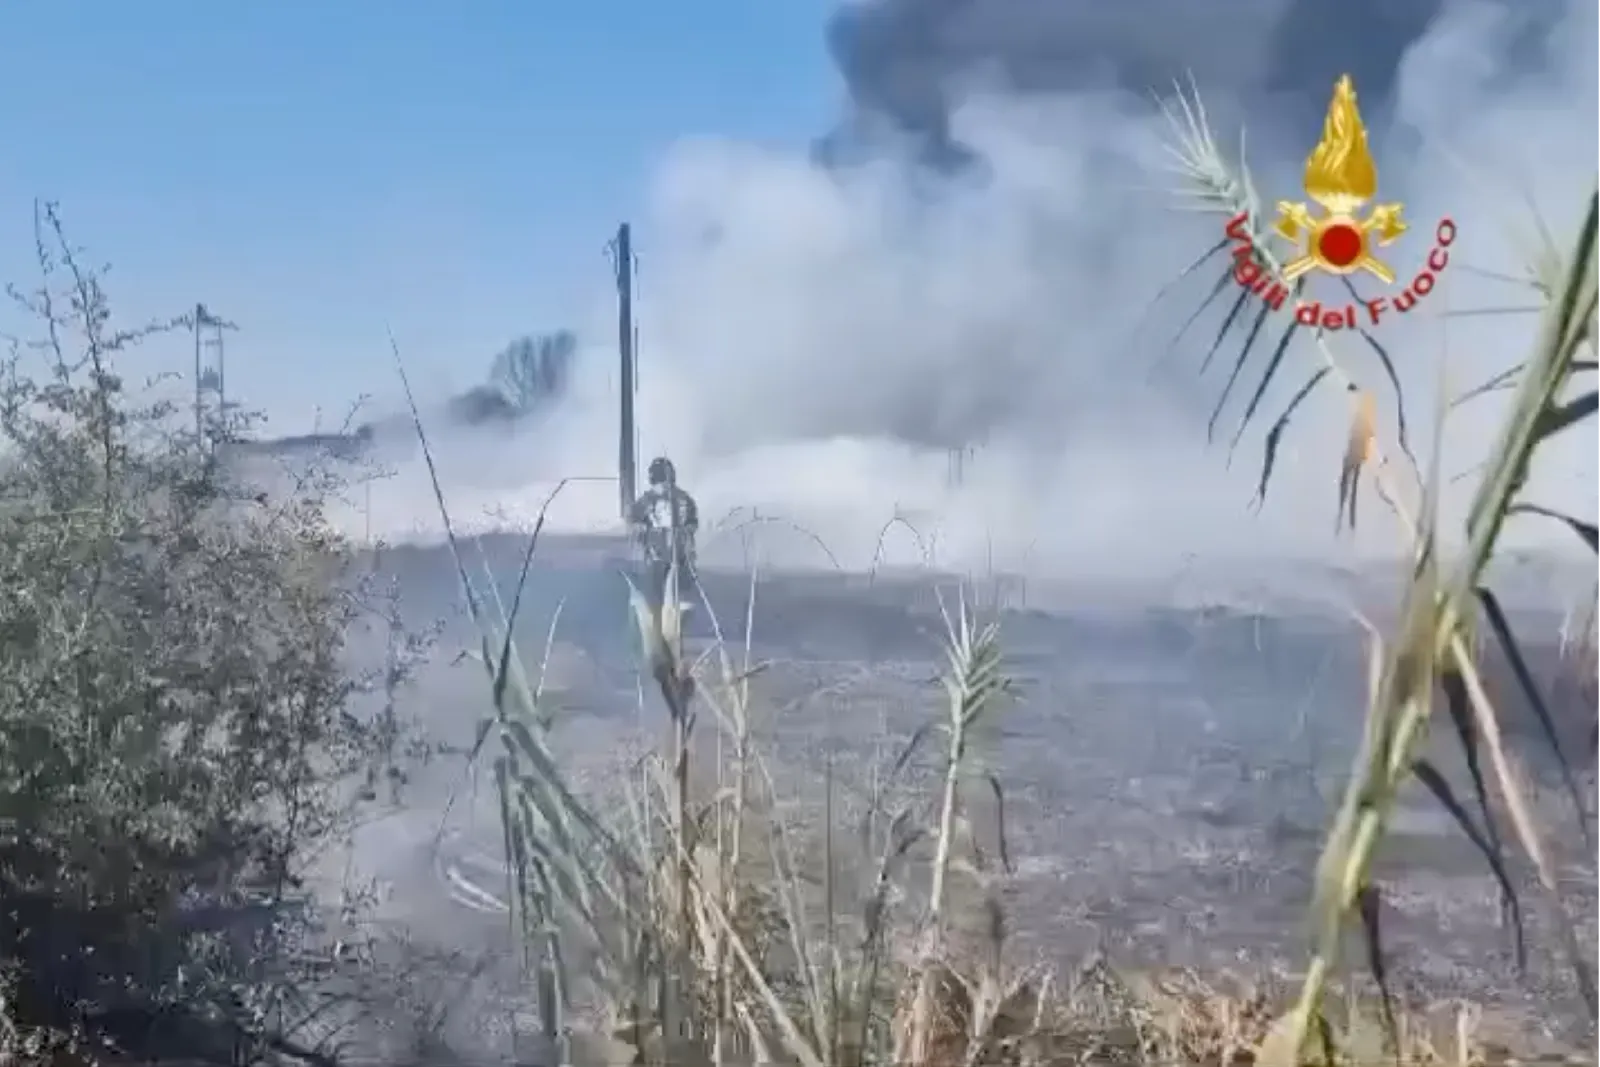 Grande incendio a Sabaudia, coinvolta un'area di 7 ettari e un'azienda (FOTO e VIDEO)